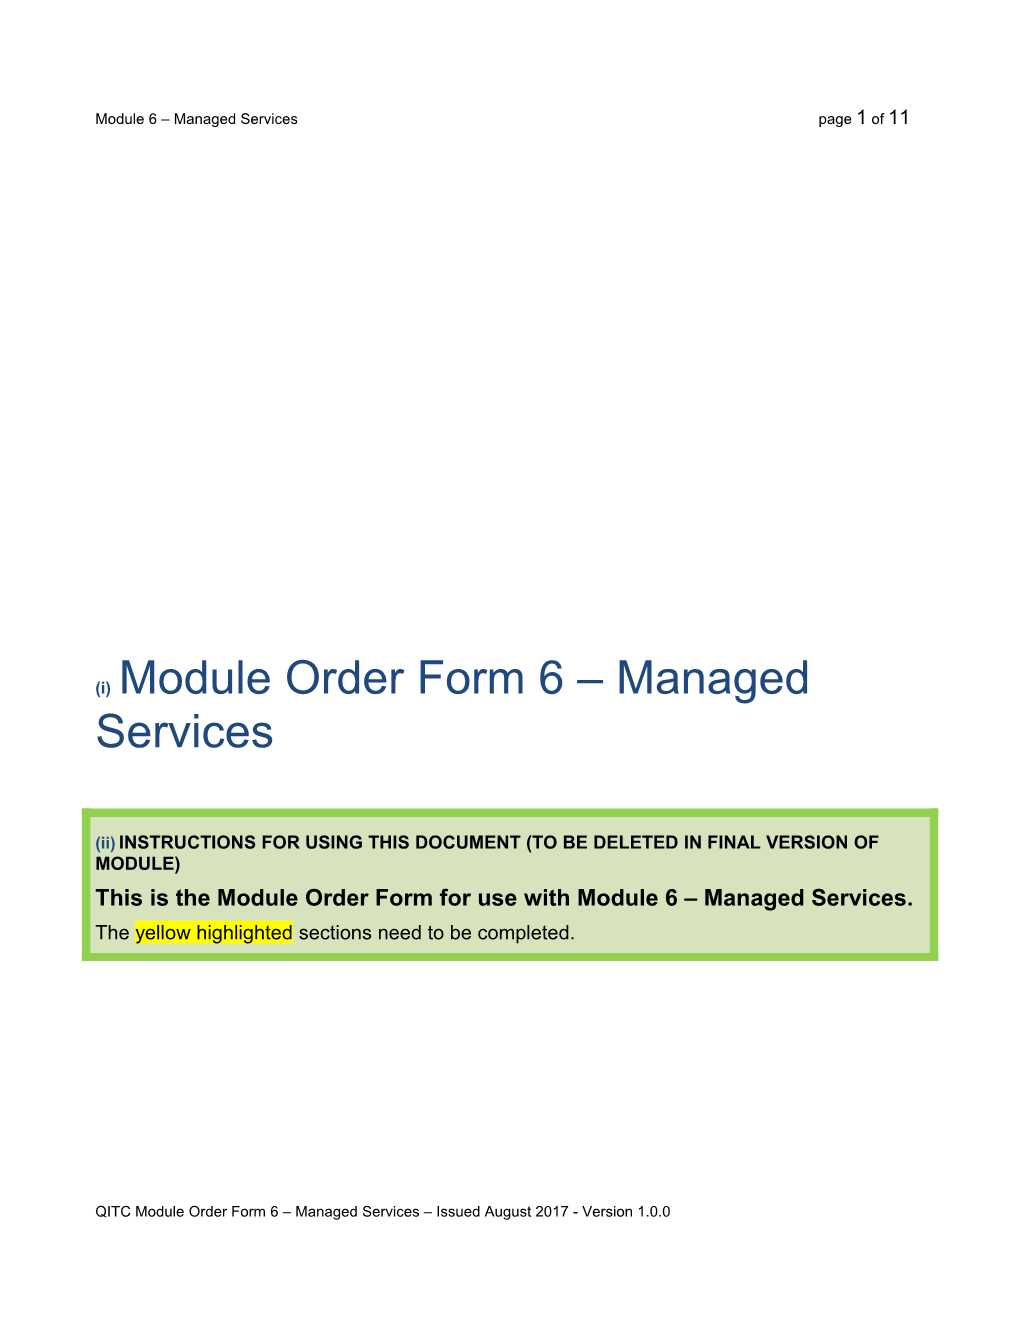 Module Order Form 6 Managedservices